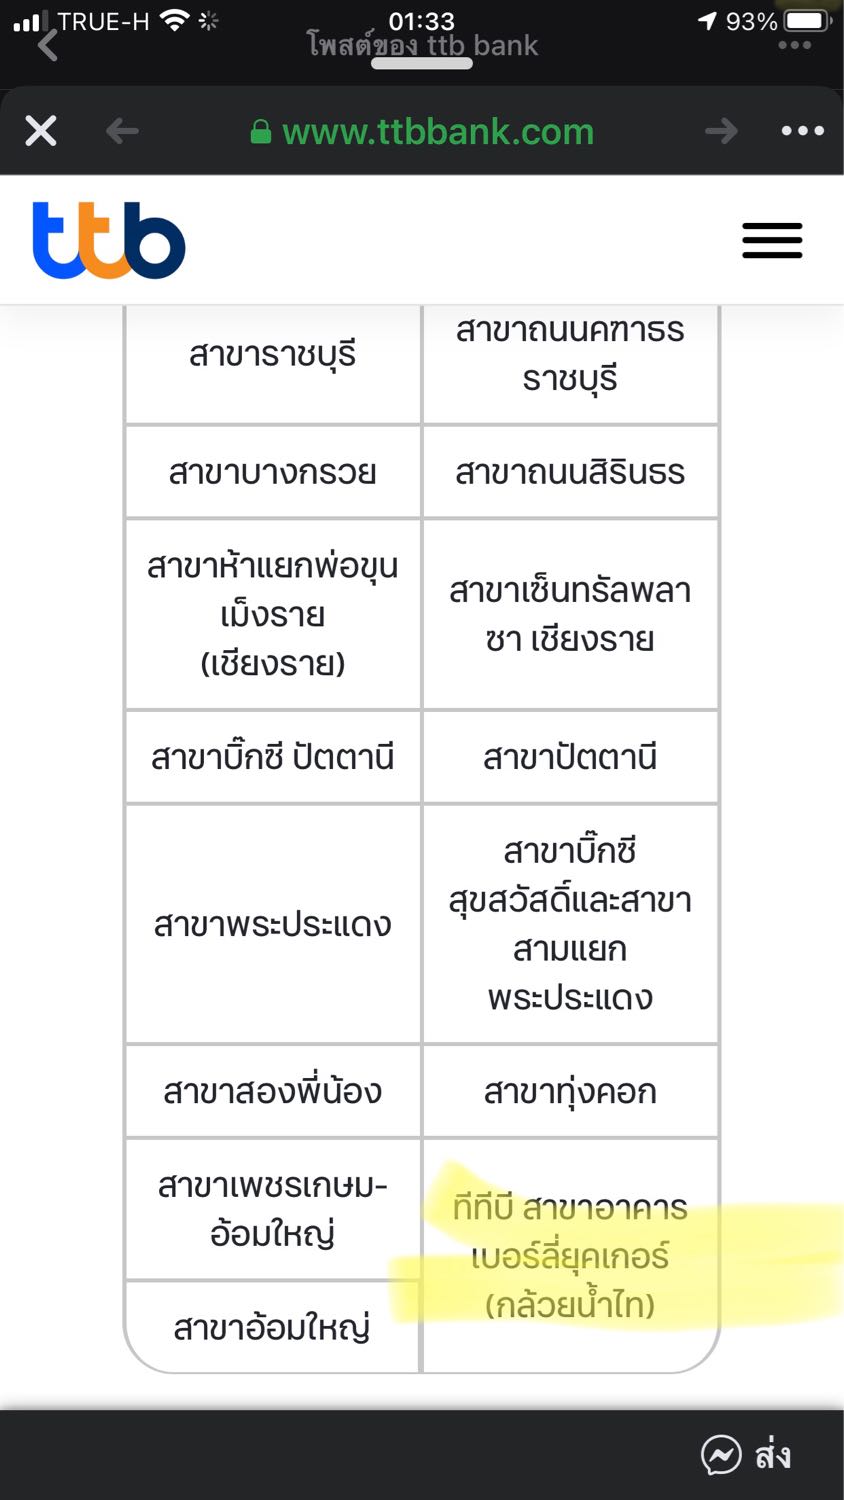 รบกวนทางธนาคารทหารไทย ช่วยตอบคำถามทั้ง 2 เรื่องด้วยนะครับ - Pantip